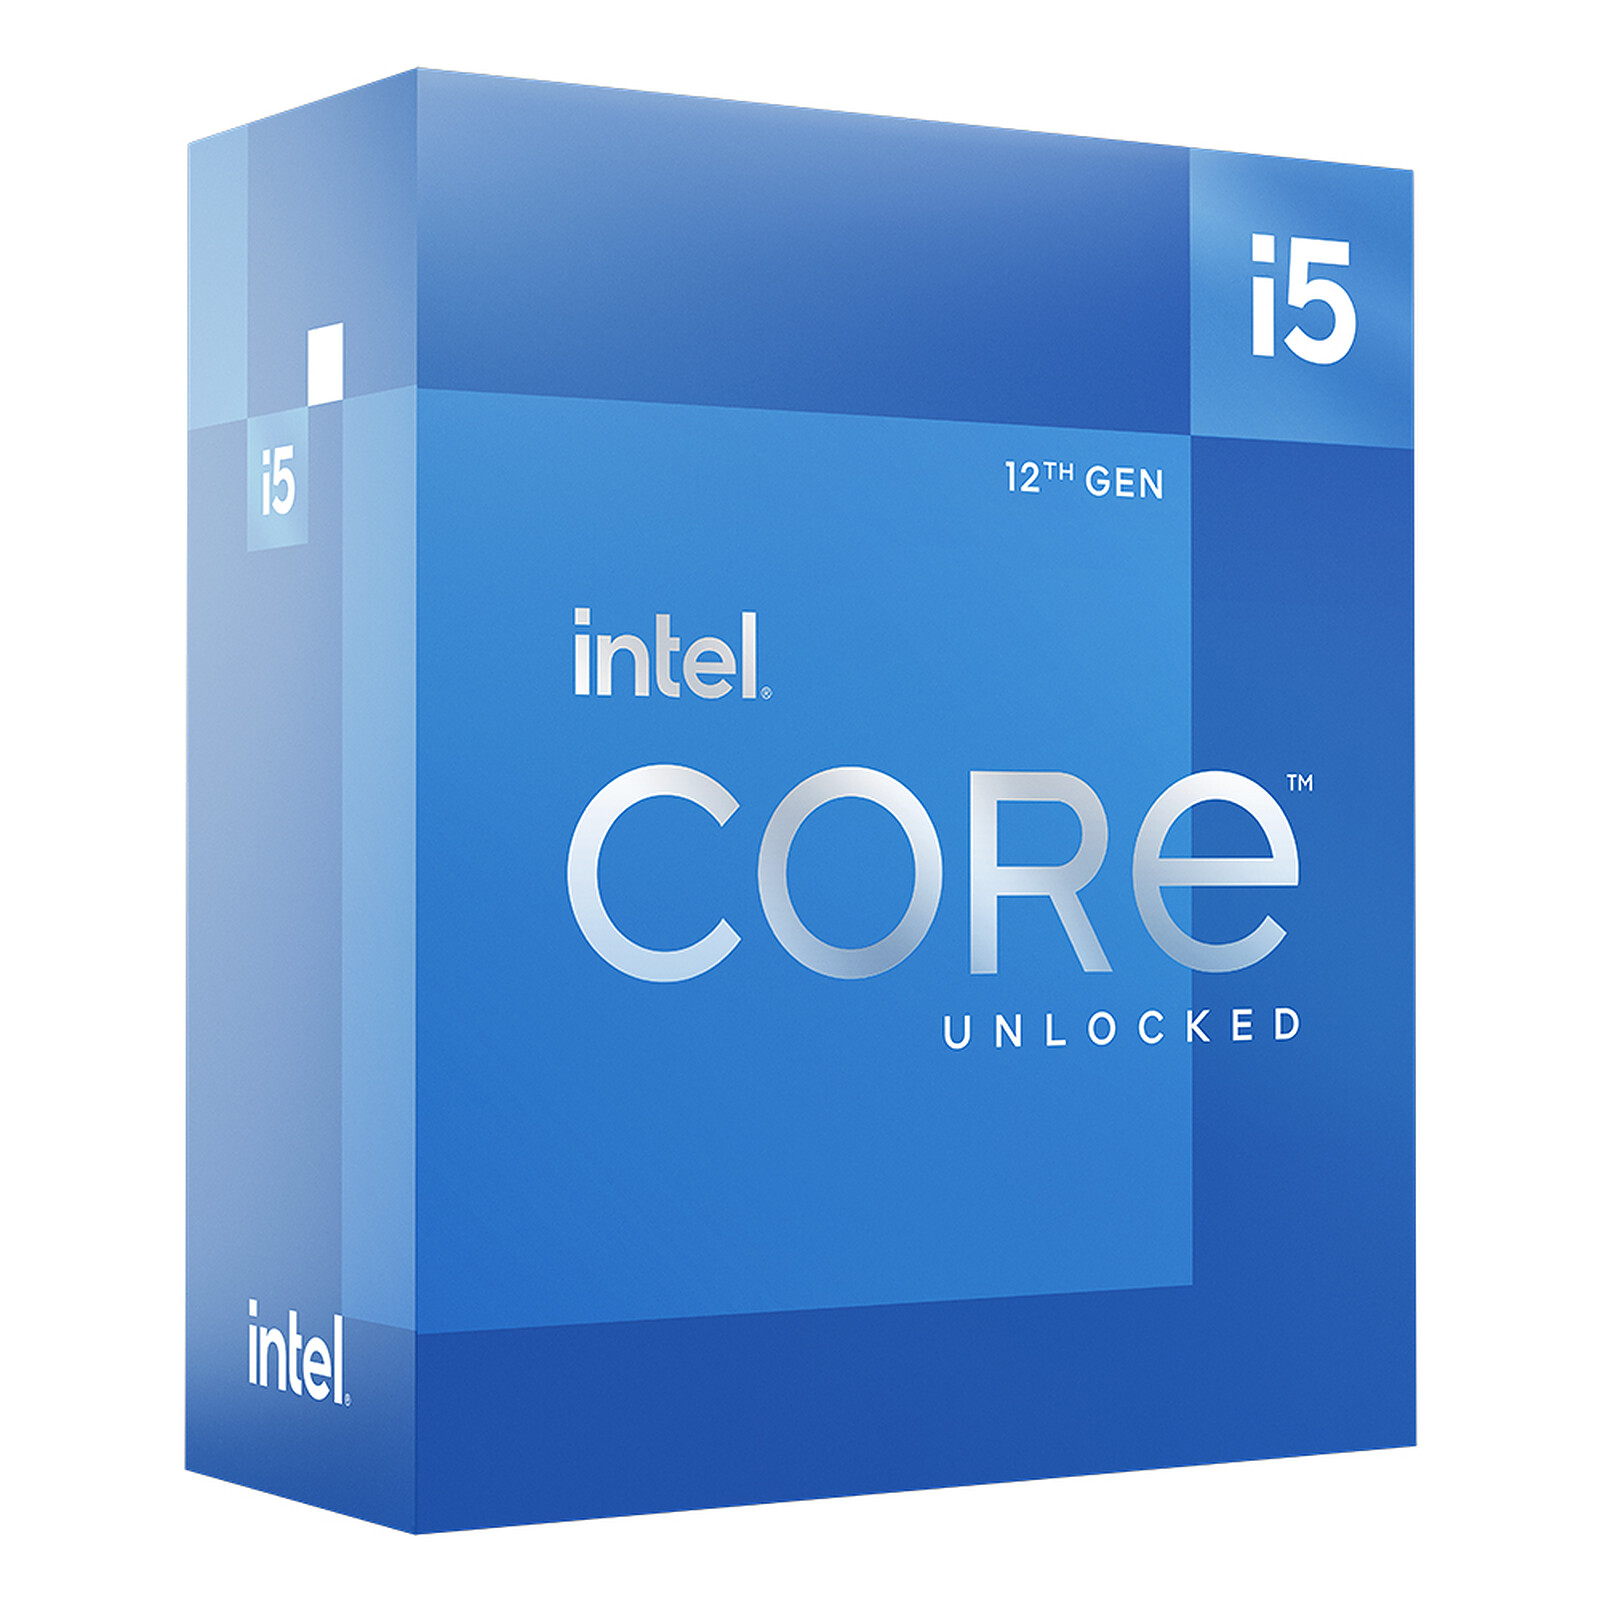 Intel Core i5 13600K recensione: la produttività è tutto, ma a quale costo?